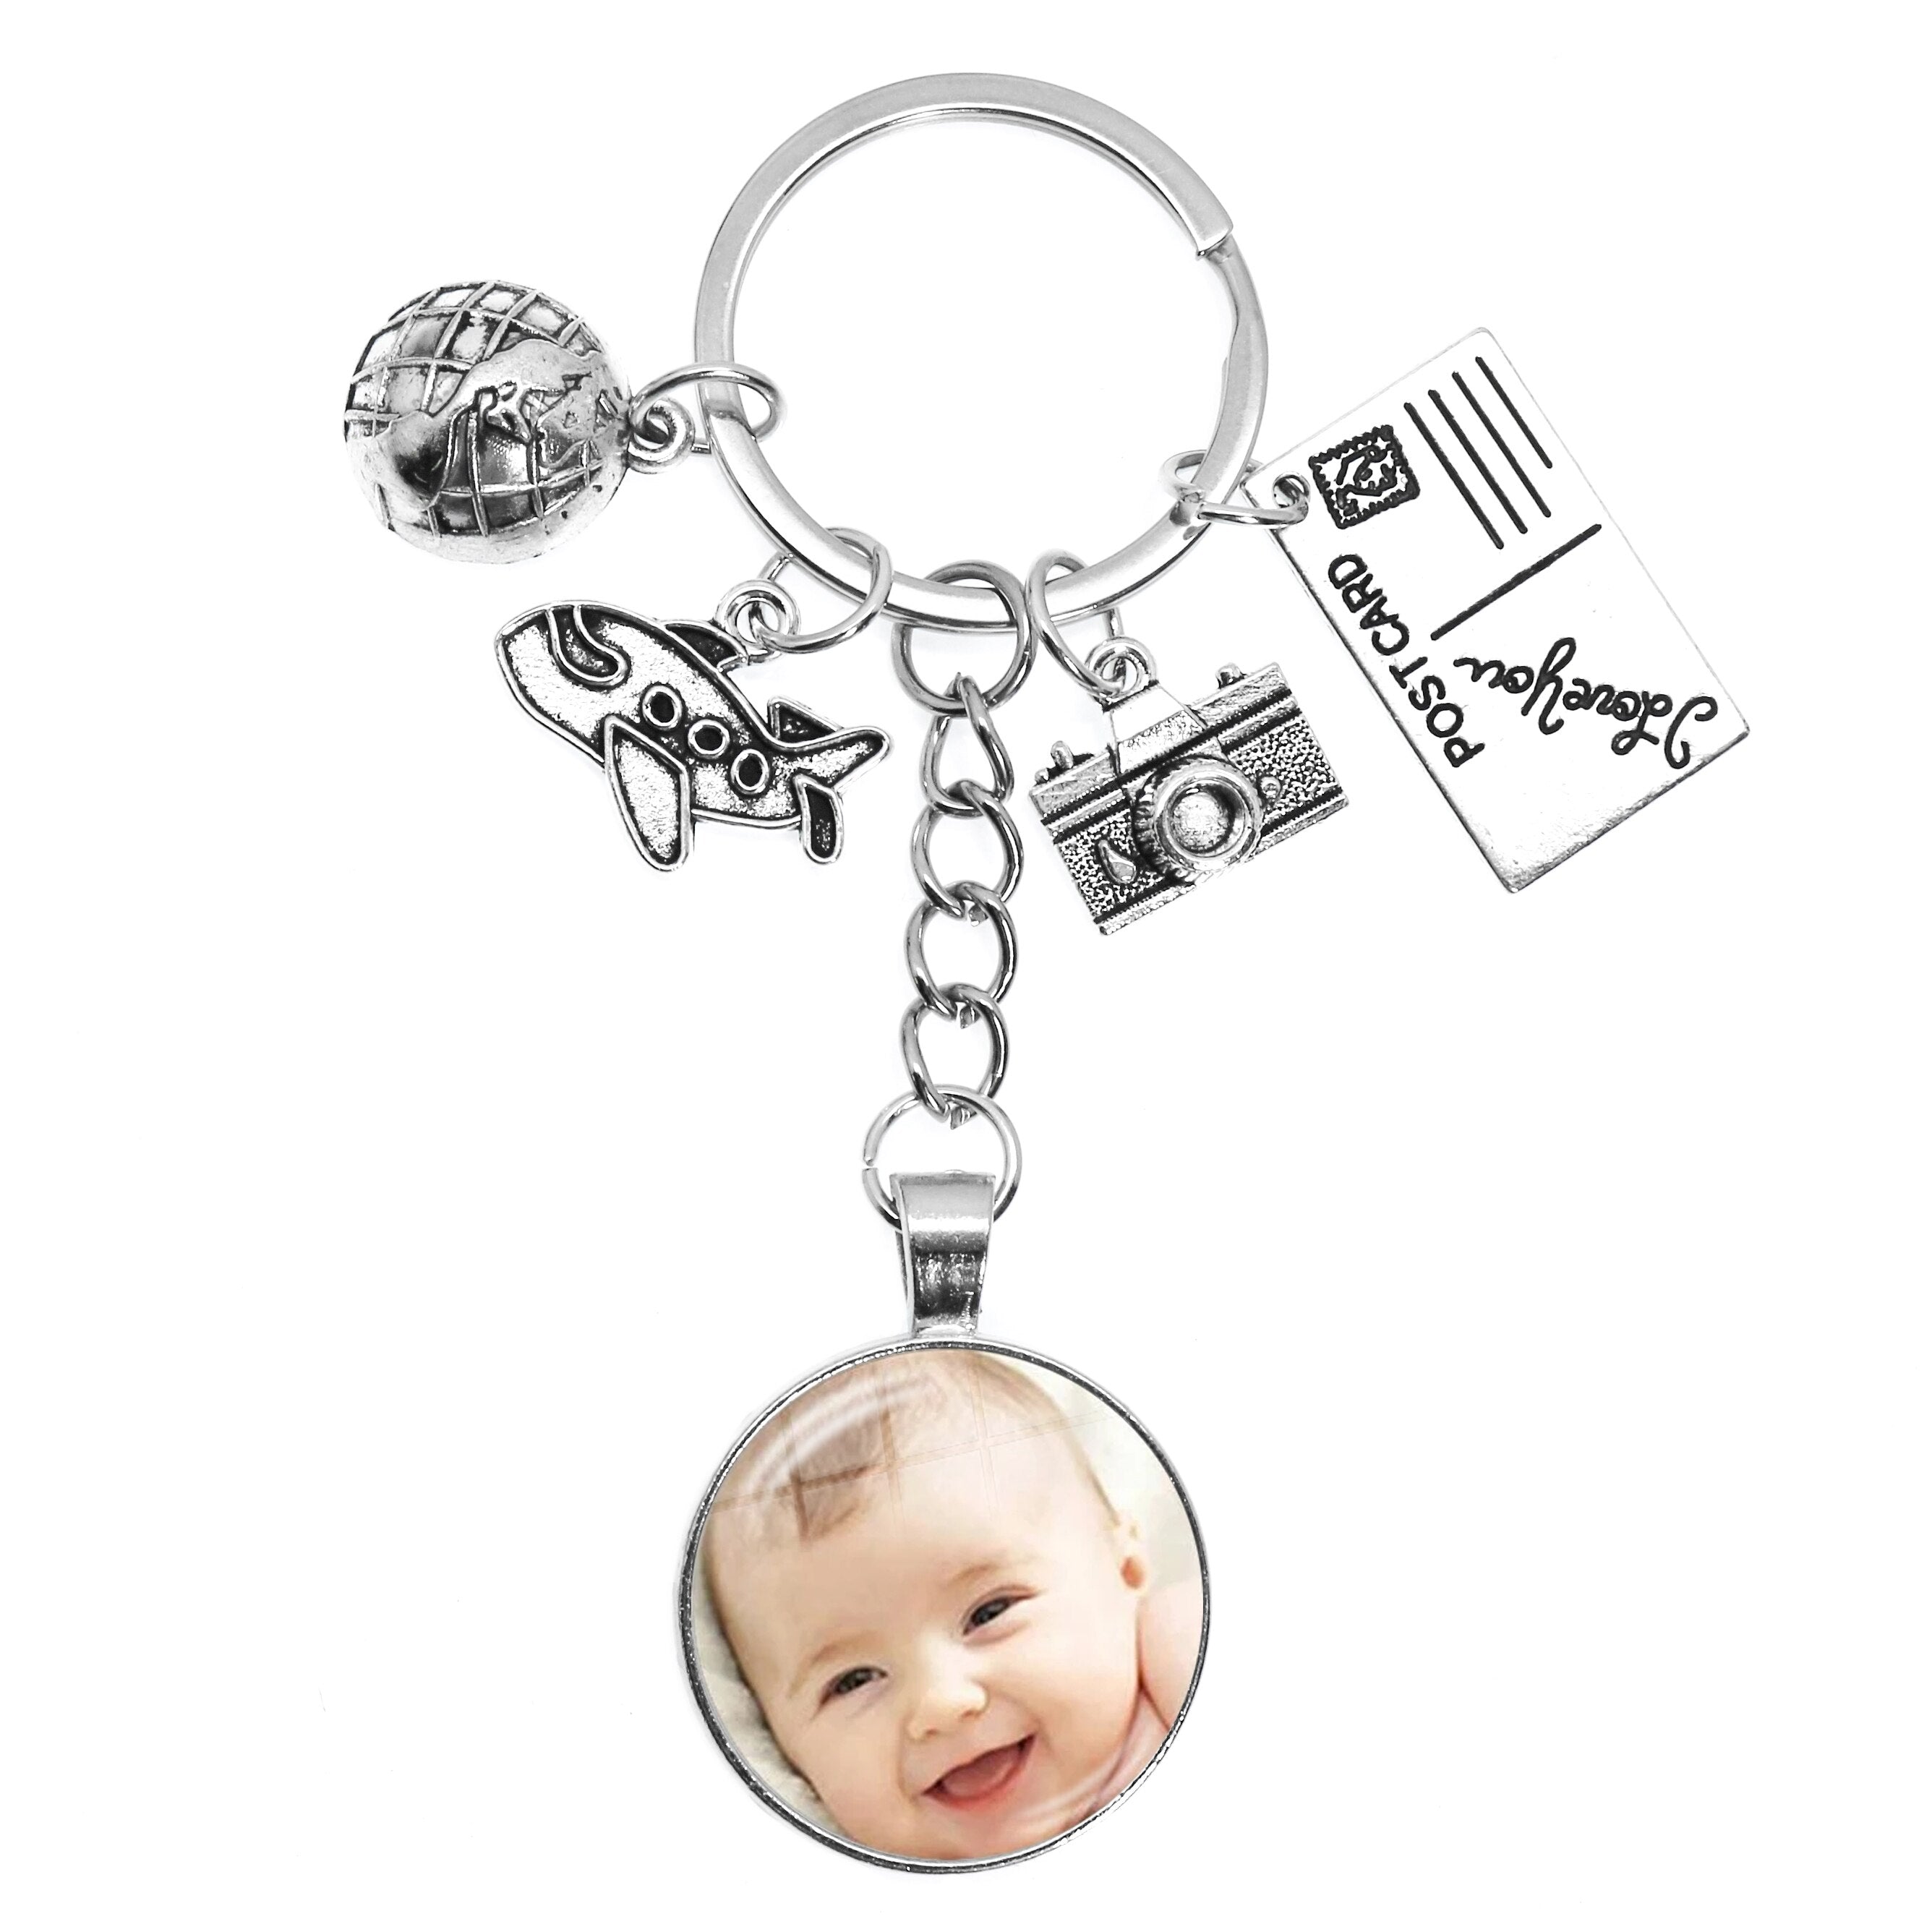 Personalized Custom Keychain Photo Mum Dad Baby Children Grandpa Parents Custom Designed Photo Gift For Family Anniversary Gift